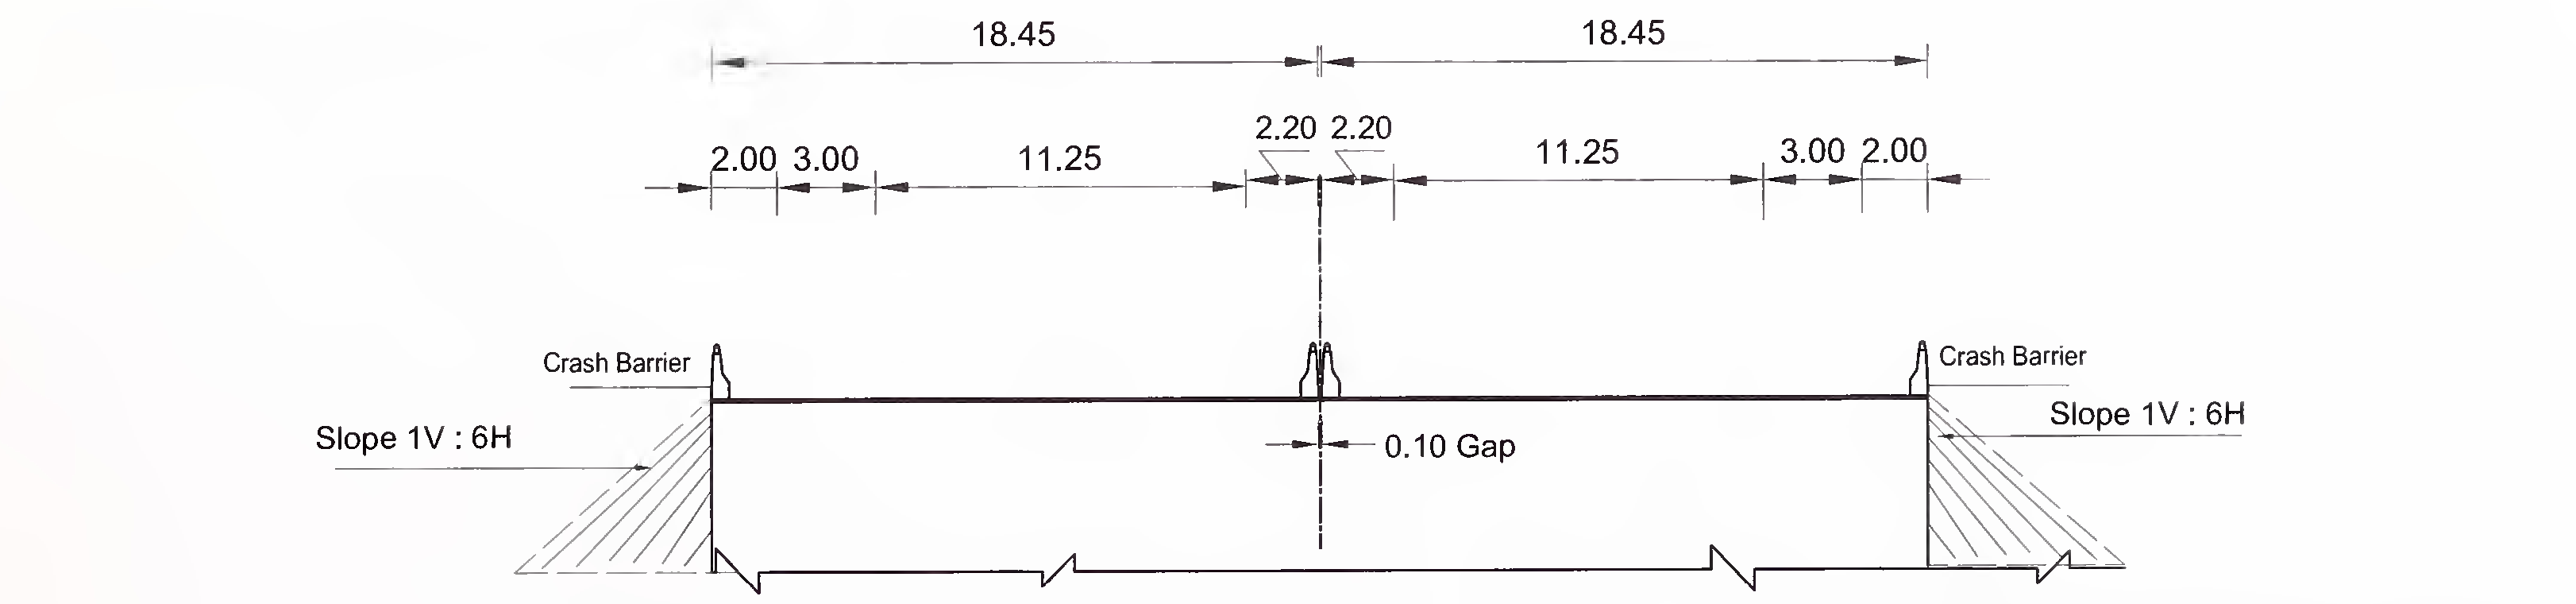 চিত্র 6.4 (খ) 6-লেনের জন্য স্ল্যাব এবং বক্স প্রকারের কালভার্টের সাধারণ ক্রস-বিভাগটি (2 × 3) ফ্লাশ মিডিয়েন সহ এক্সপ্রেস হাইওয়ে